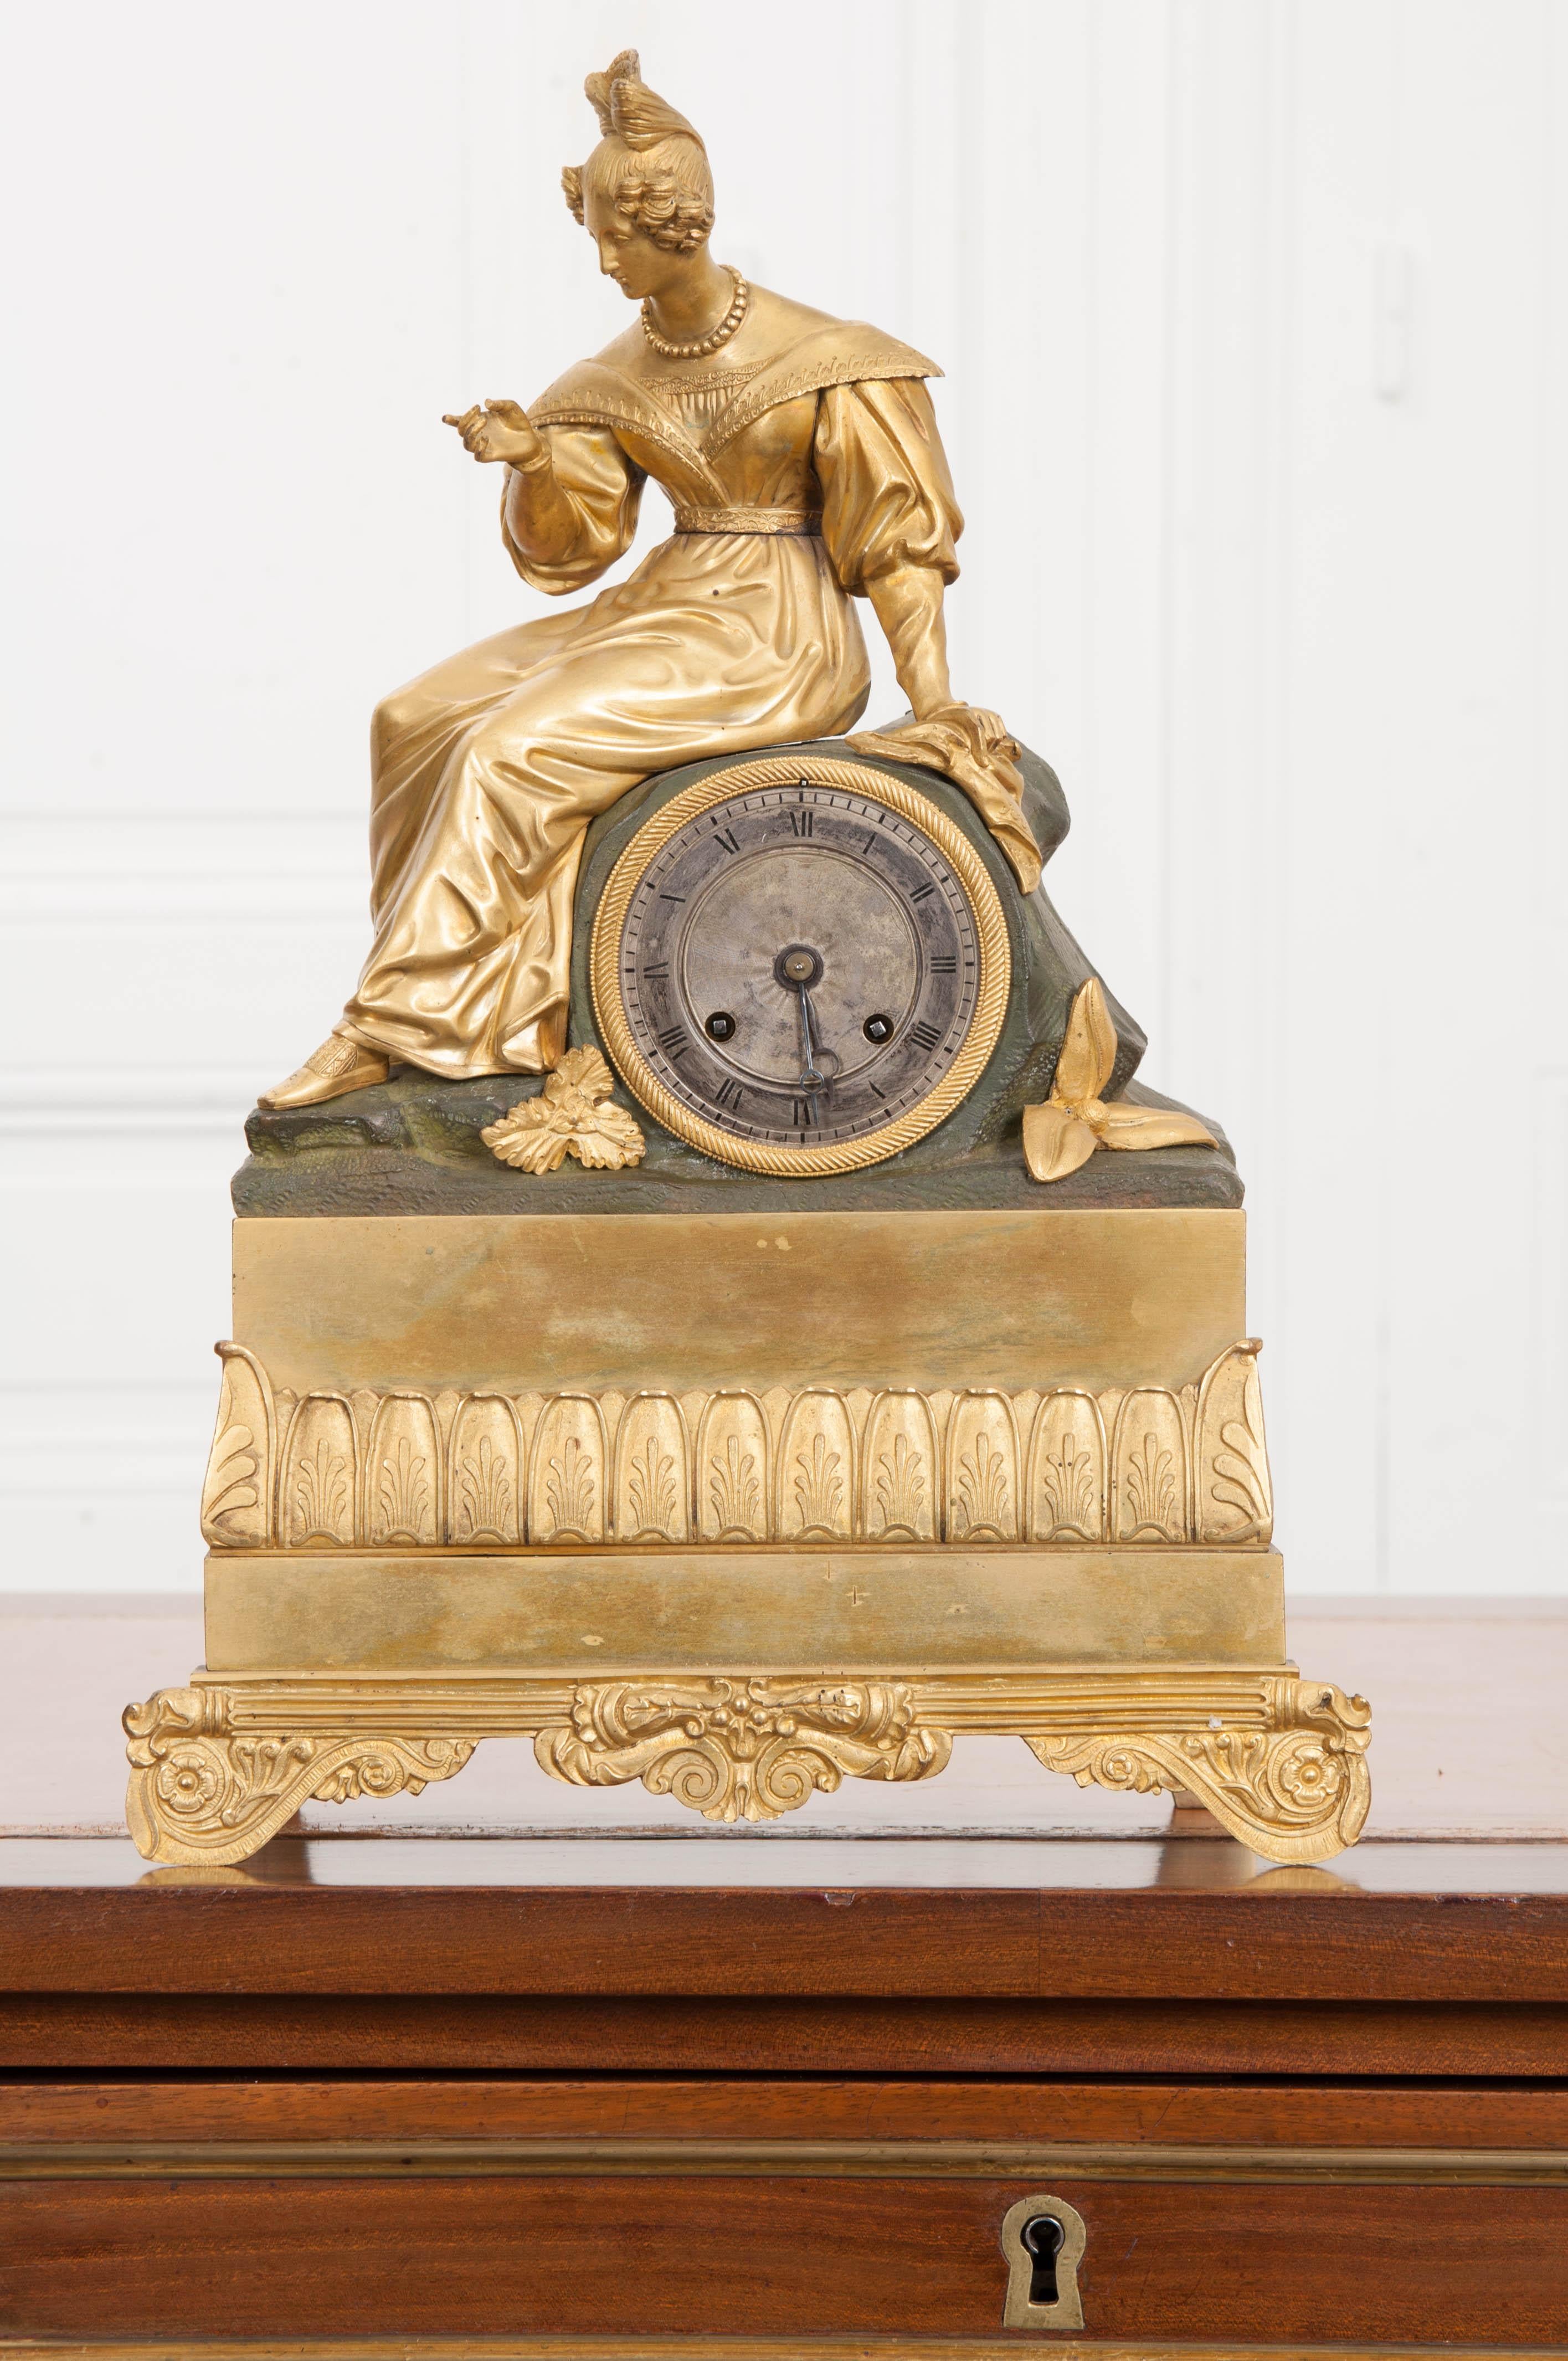 Diese wunderschön detaillierte Napoleon III feuervergoldete Bronze figurale Kaminsimsuhr ist aus Frankreich, ca. 1860-1880. Das Bild zeigt eine anmutige Jungfrau in klassischer Kleidung, die auf einem Felsen sitzt. Der Sockel ist mit einer